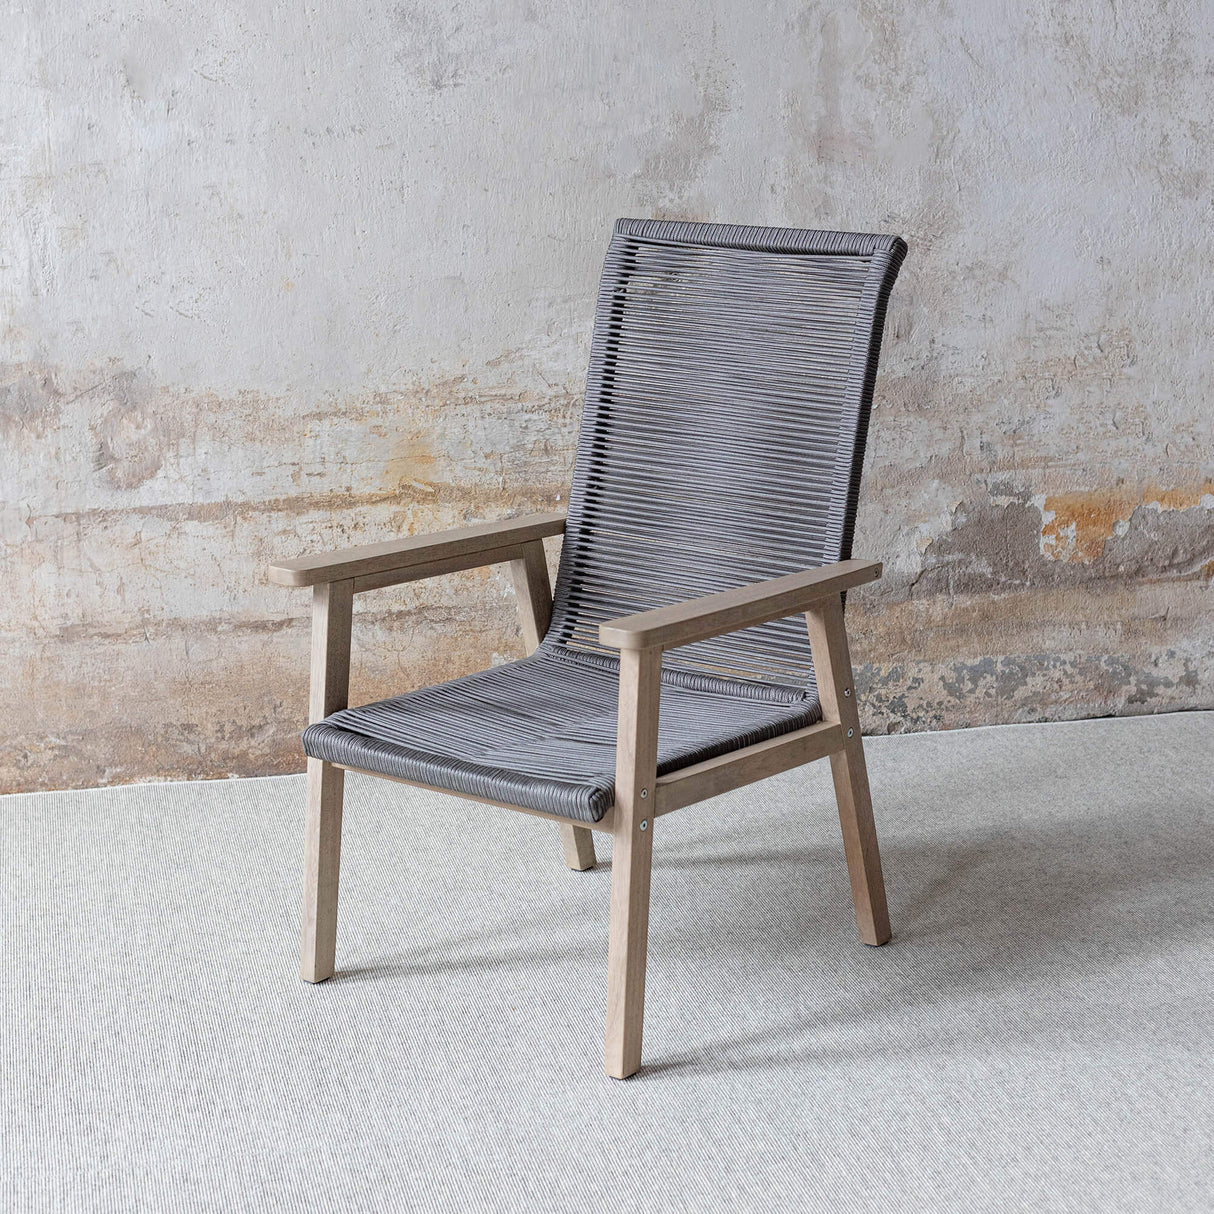 Akazienholz mypureliving mit Zweier Set Soul aus Beistelltisch Stühle |